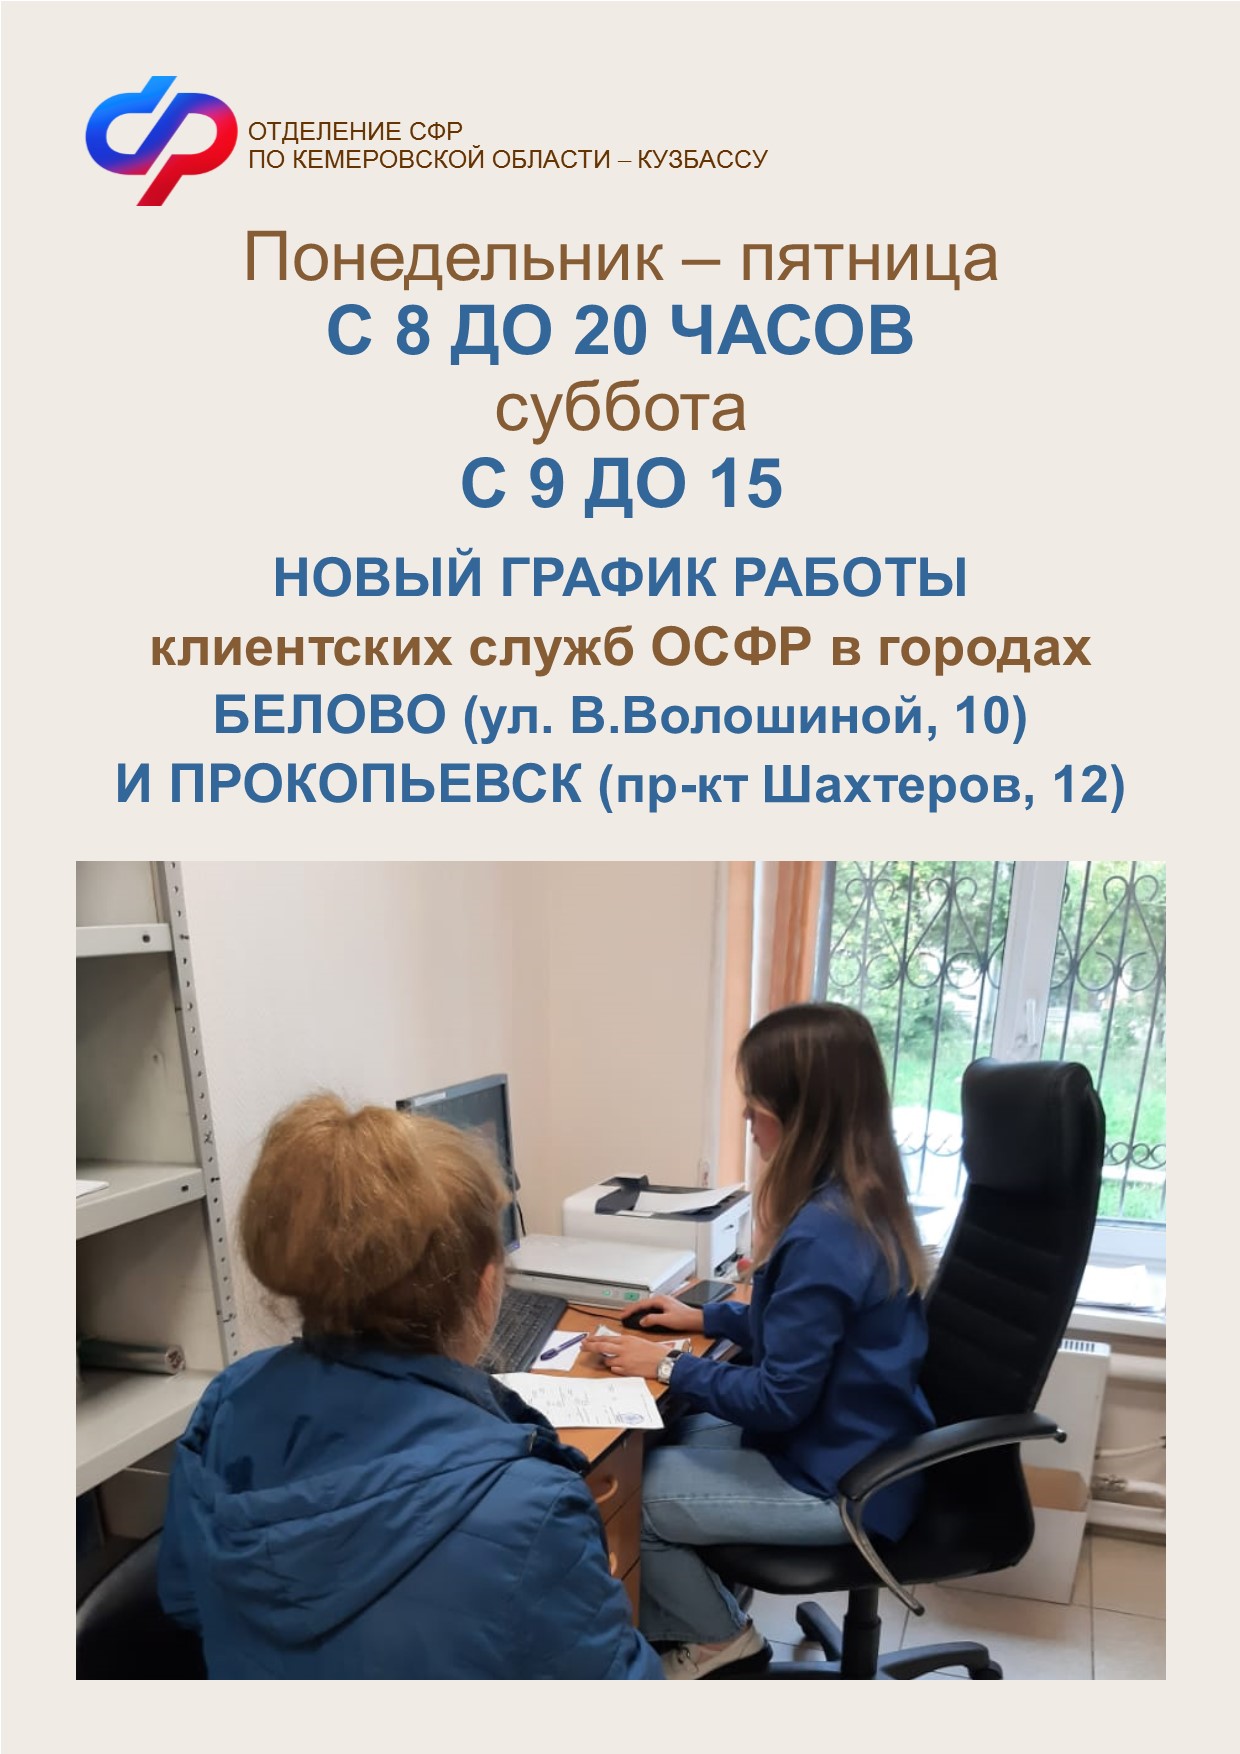 1117 человек обратились в дополнительные часы работы в клиентские службы СФР в Белове (ул. В. Волошиной, 10) и Прокопьевске (пр-кт Шахтеров, 12). 